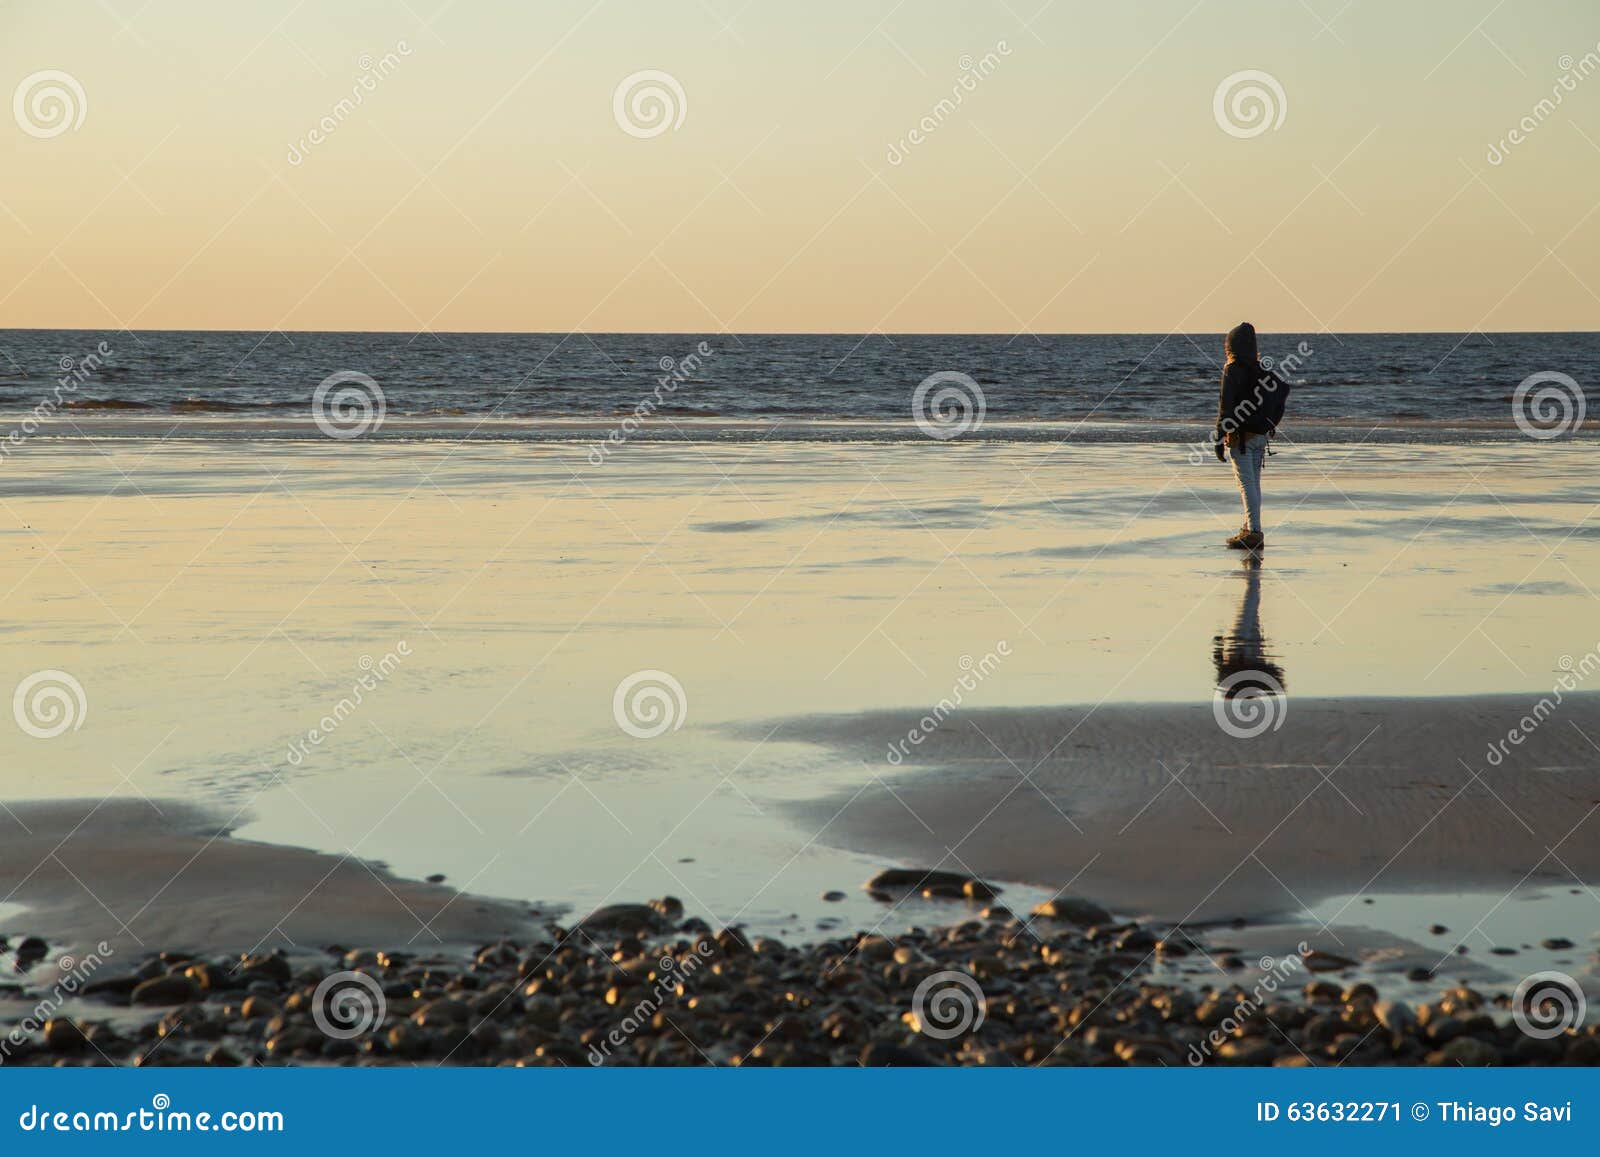 a girl at the beach shore